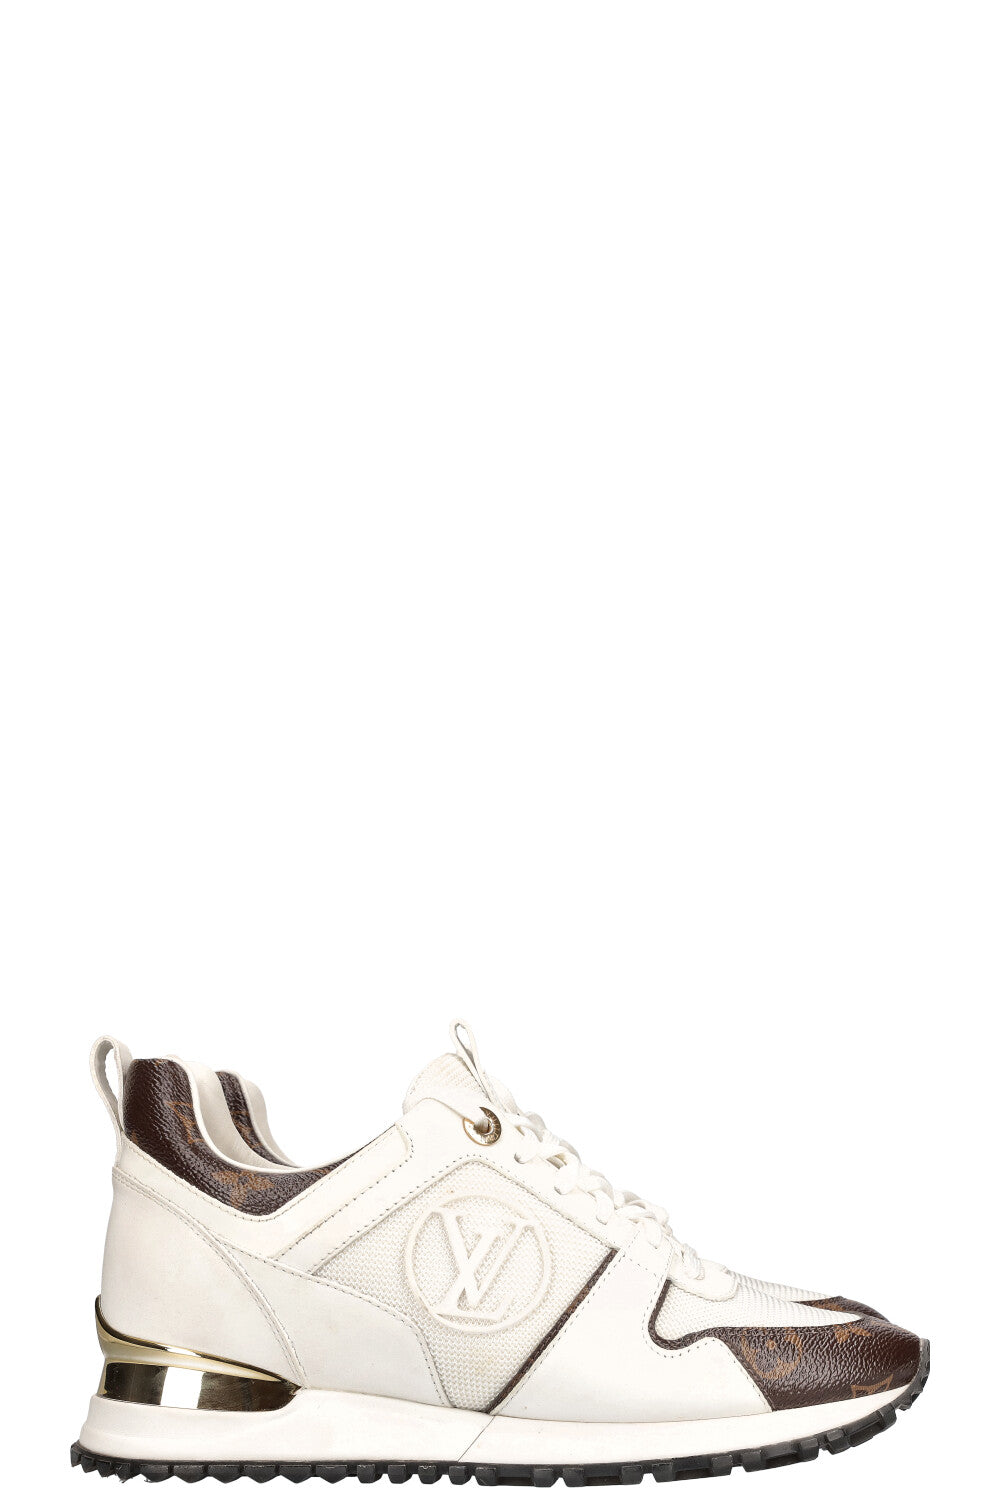 LOUIS VUITTON Sneakers White